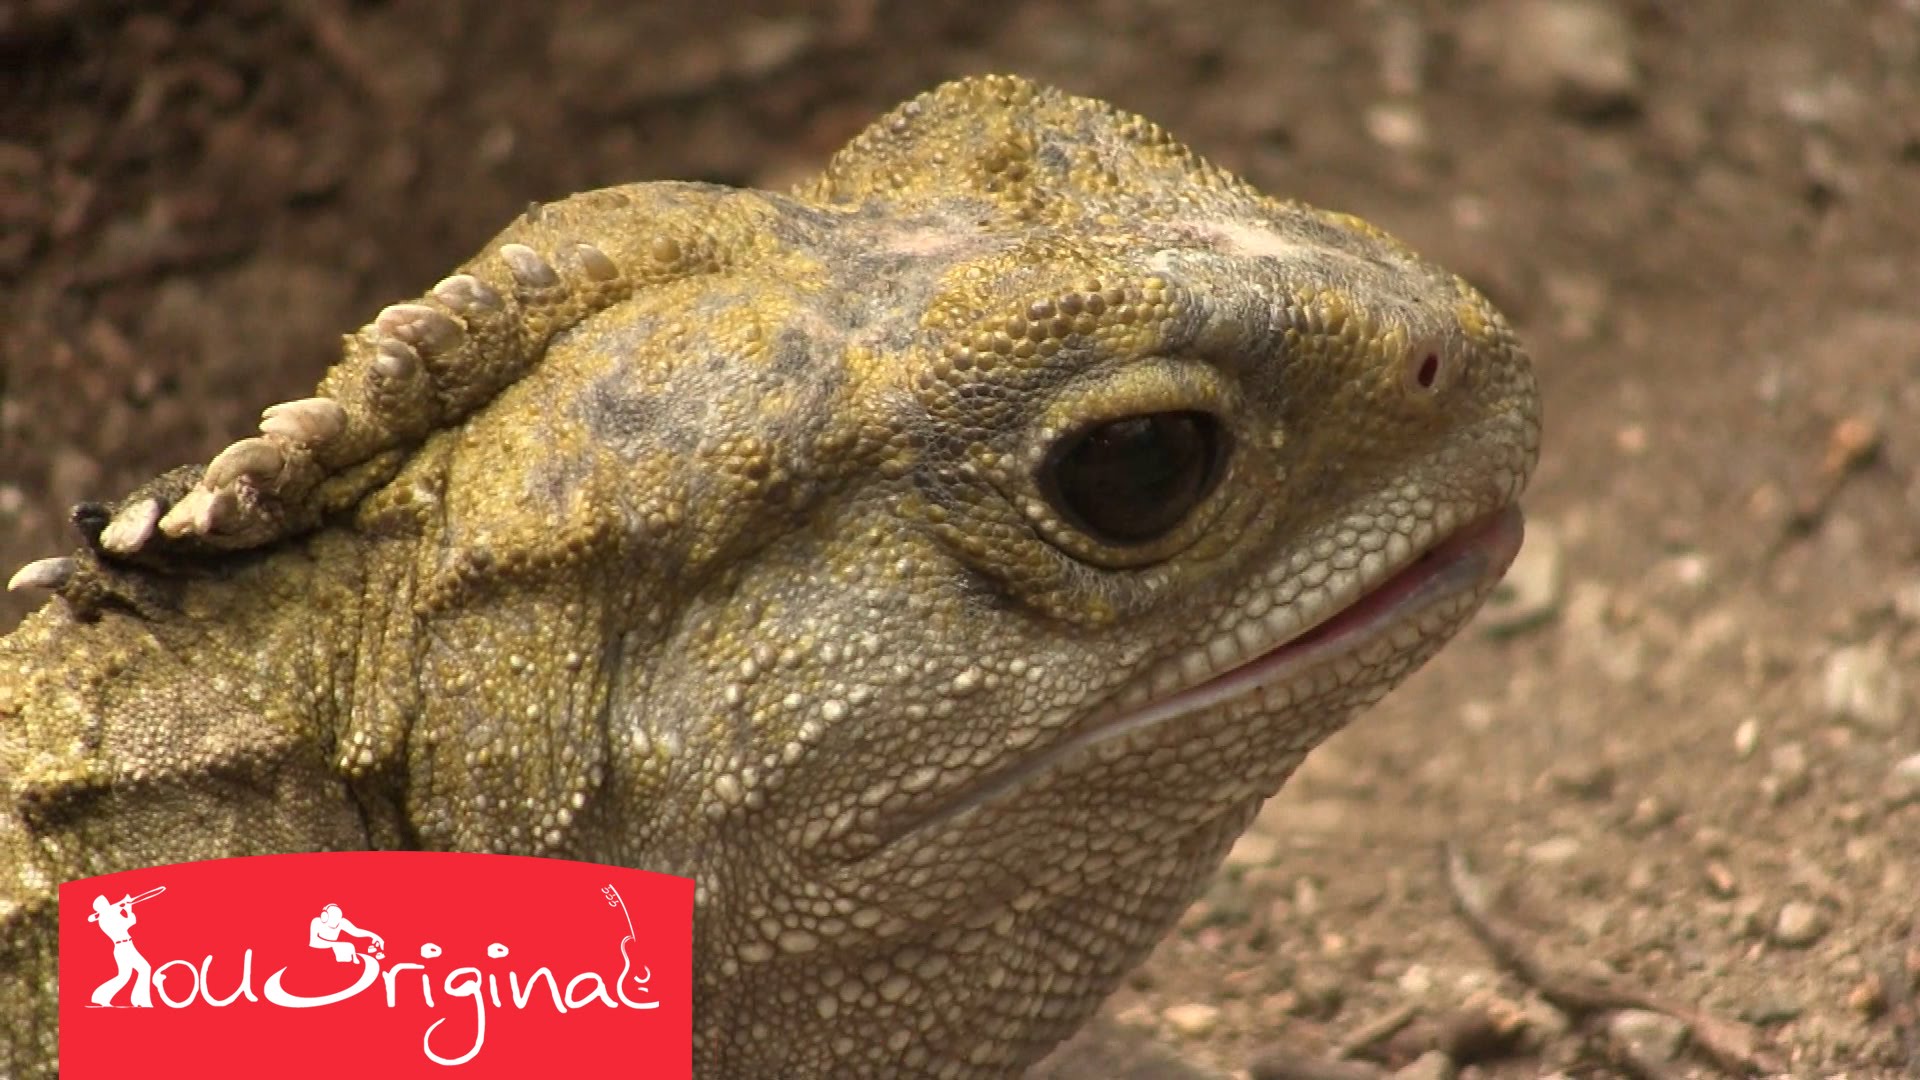 Living fossil - The amazing Tuatara reptile - YouTube